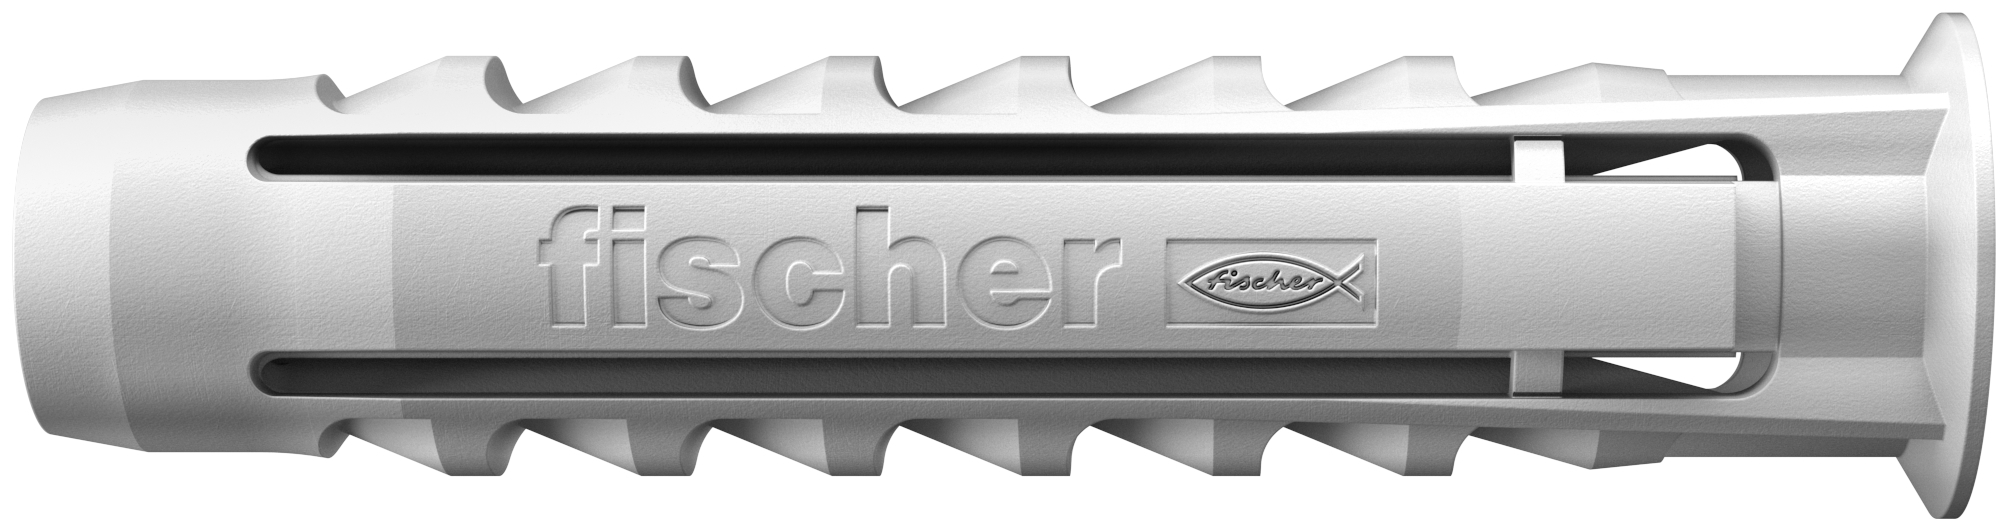 fischer Big Pack Tasselli SX 6 (250 Tasselli) (240 Pz.) Busta di tasselli formato convenienza.